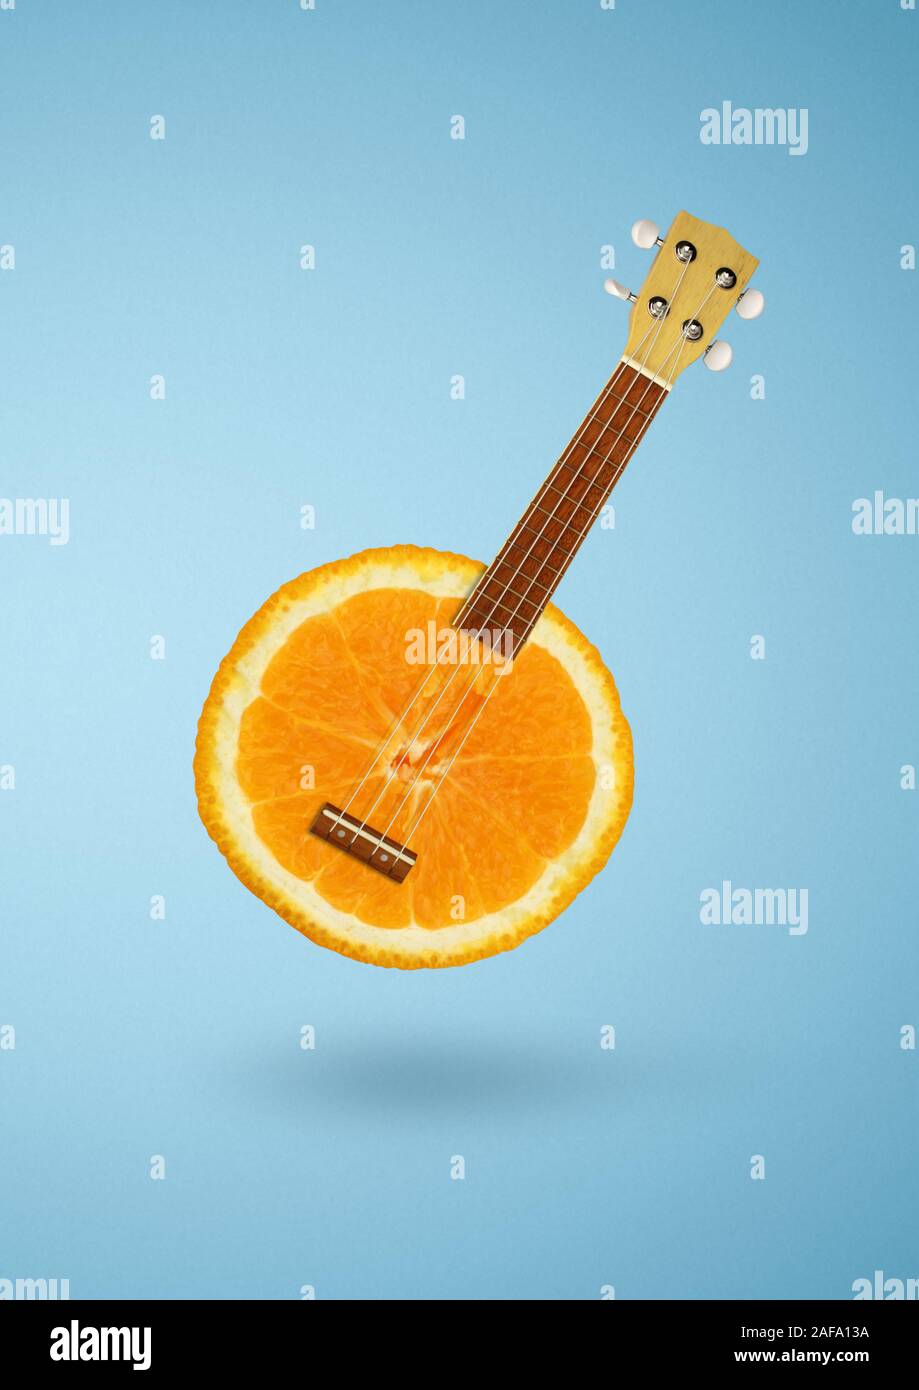 Concept créatif, orange comme la guitare sur fond bleu Banque D'Images